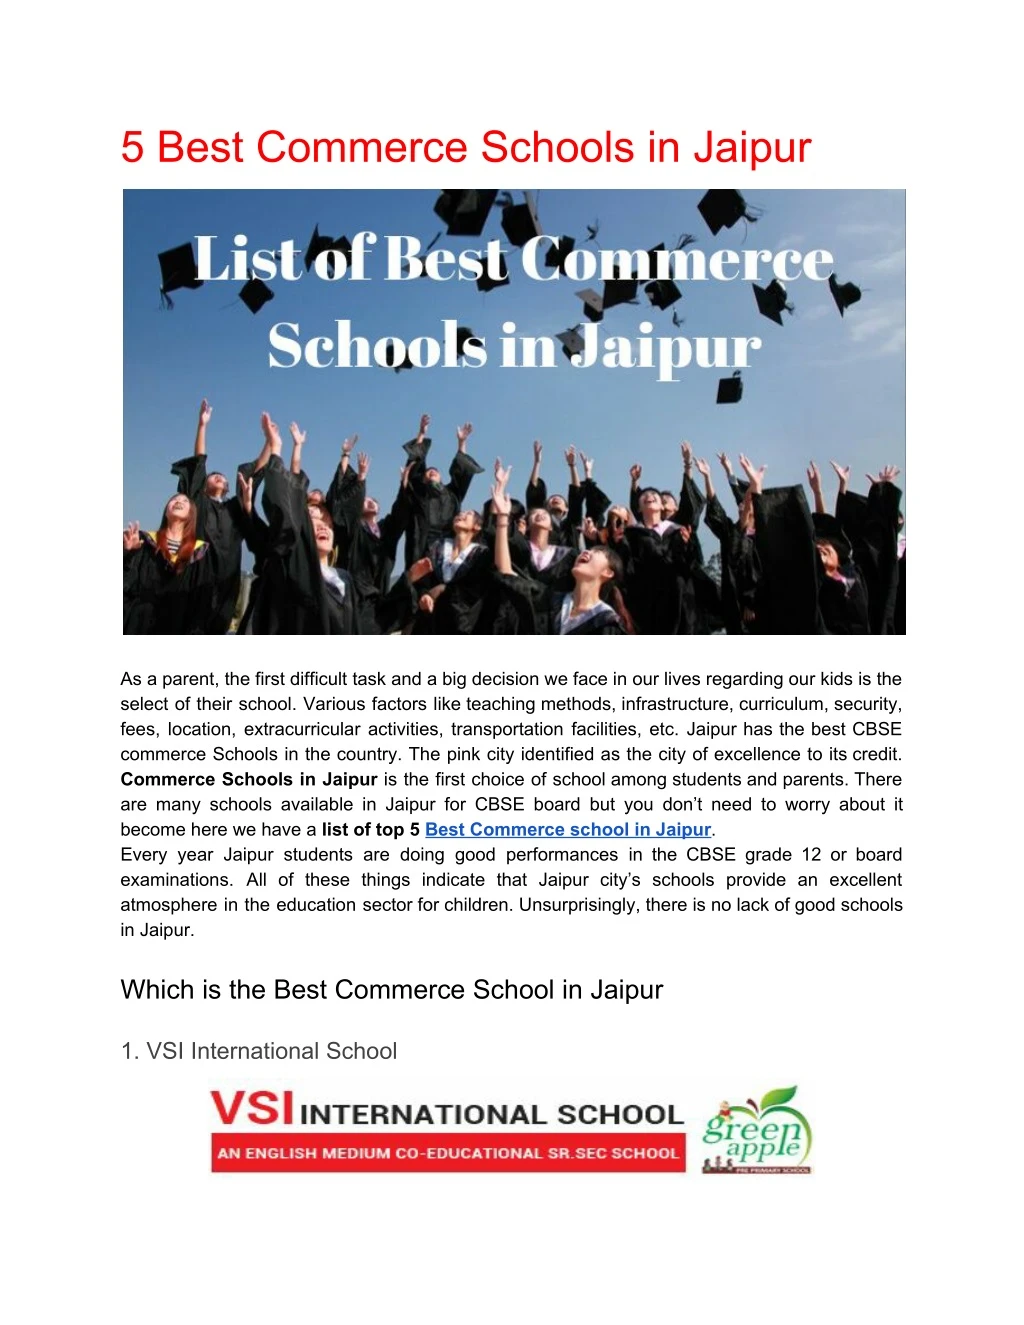 5 best commerce schools in jaipur